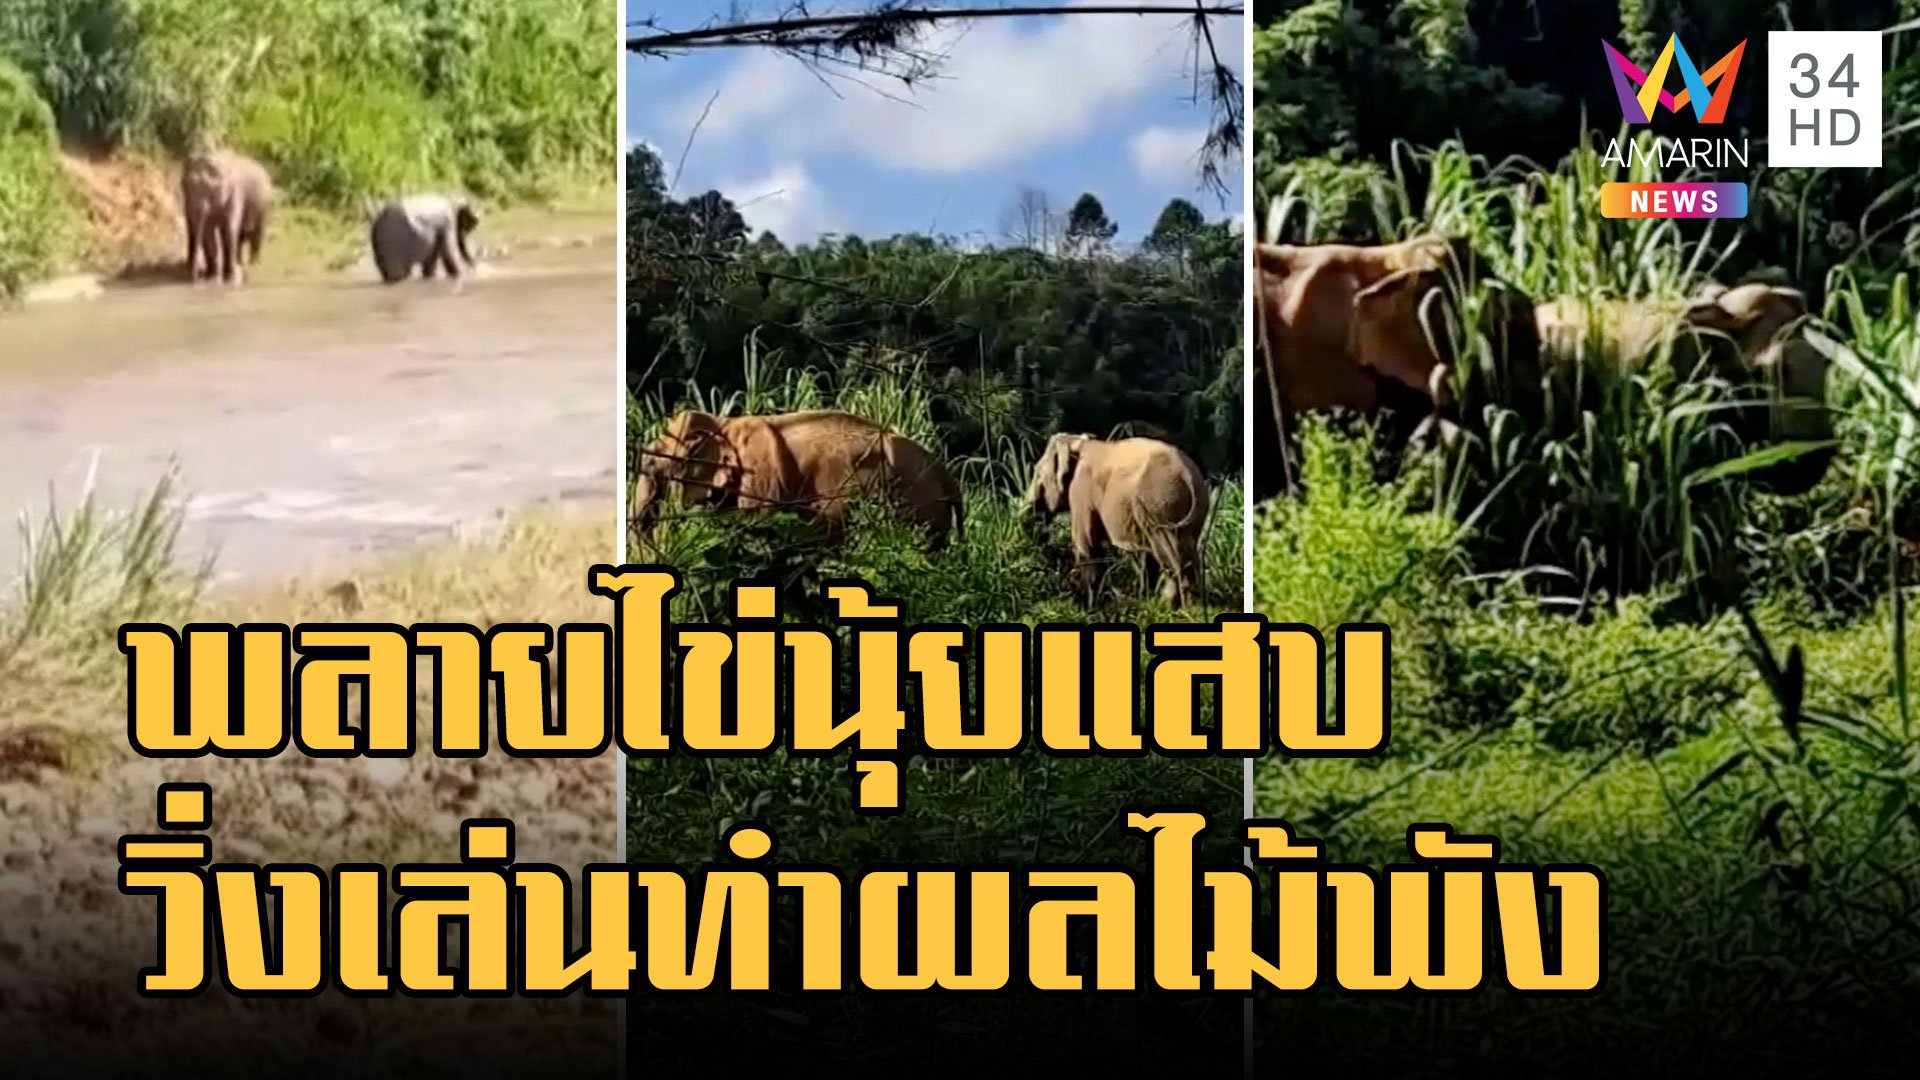 พลายไข่นุ้ย ช้างป่าชวนช้างบ้านวิ่งเล่น ทำสวนผลไม้พังราบ | ข่าวเที่ยงอมรินทร์ | 30 พ.ย. 65 | AMARIN TVHD34